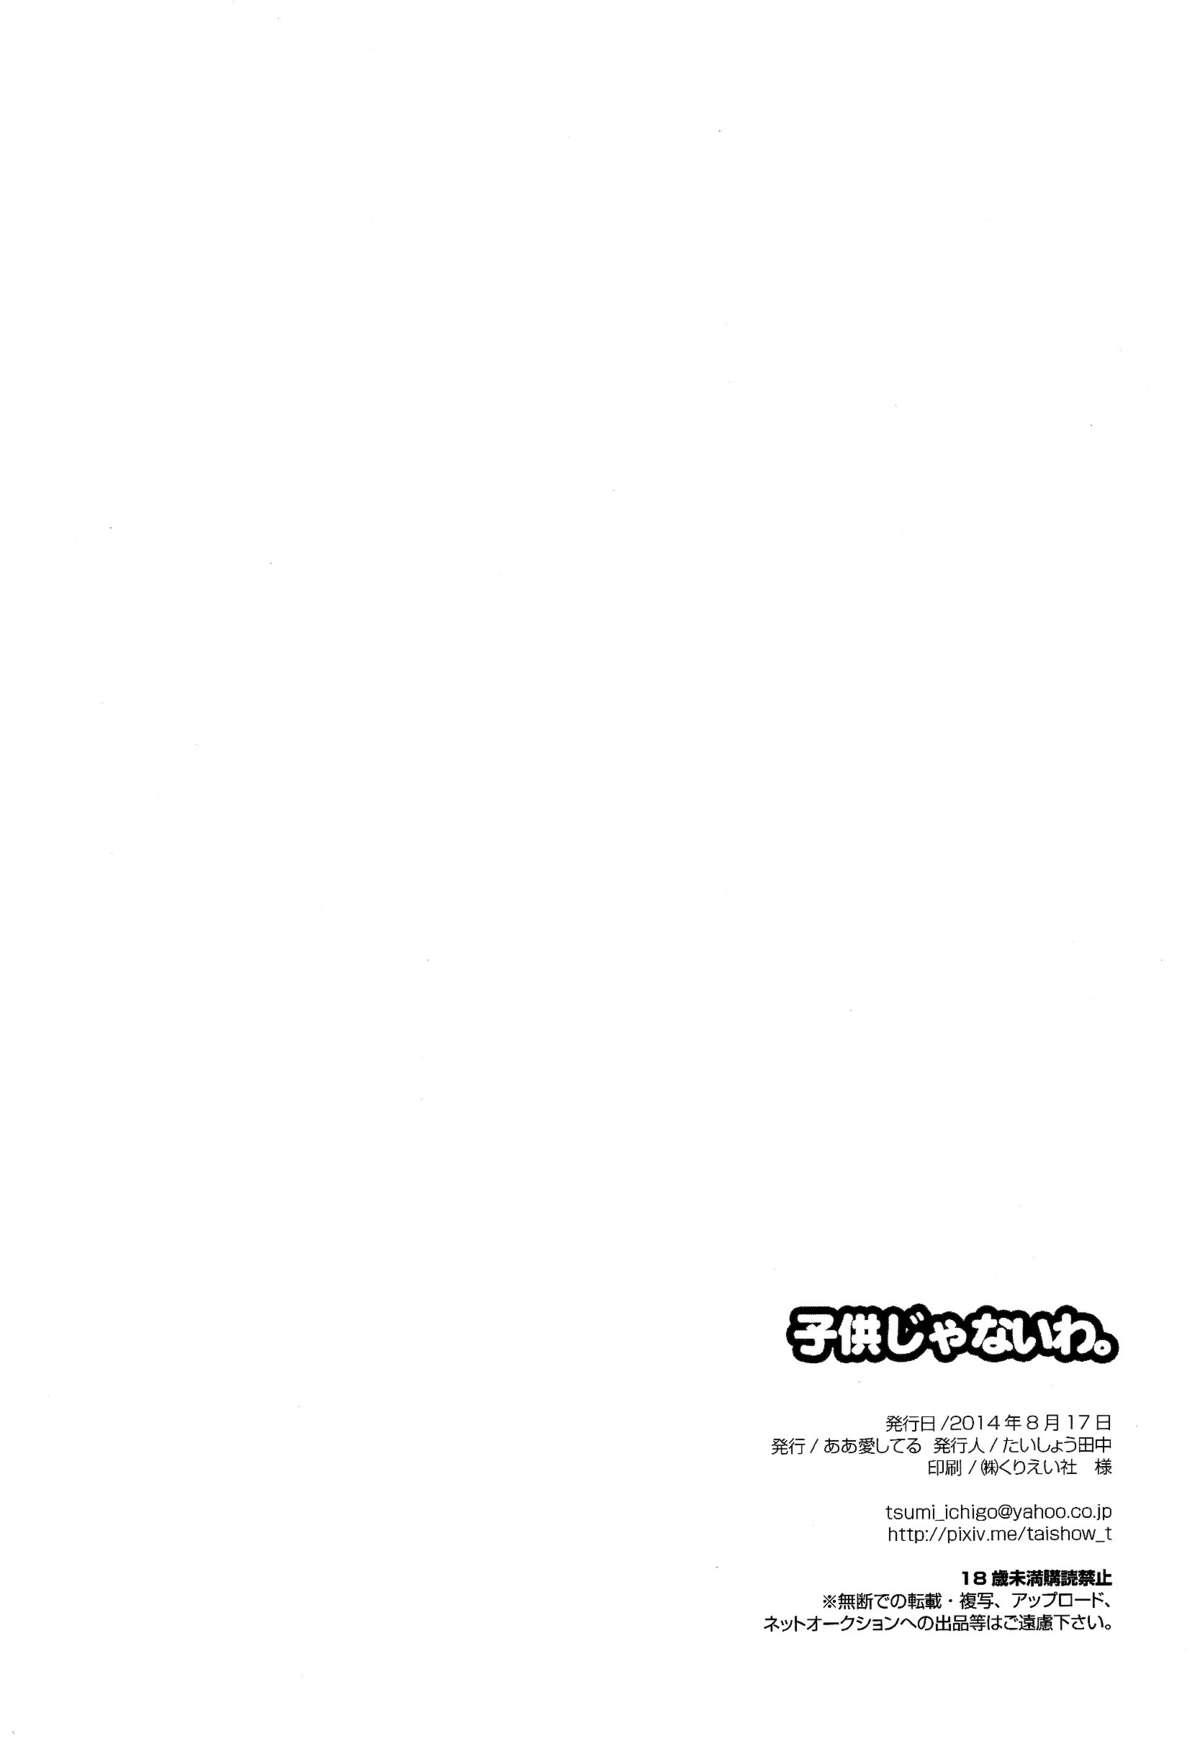 Mask Kodomo ja Nai wa. - Nanatsu no taizai Clip - Page 32